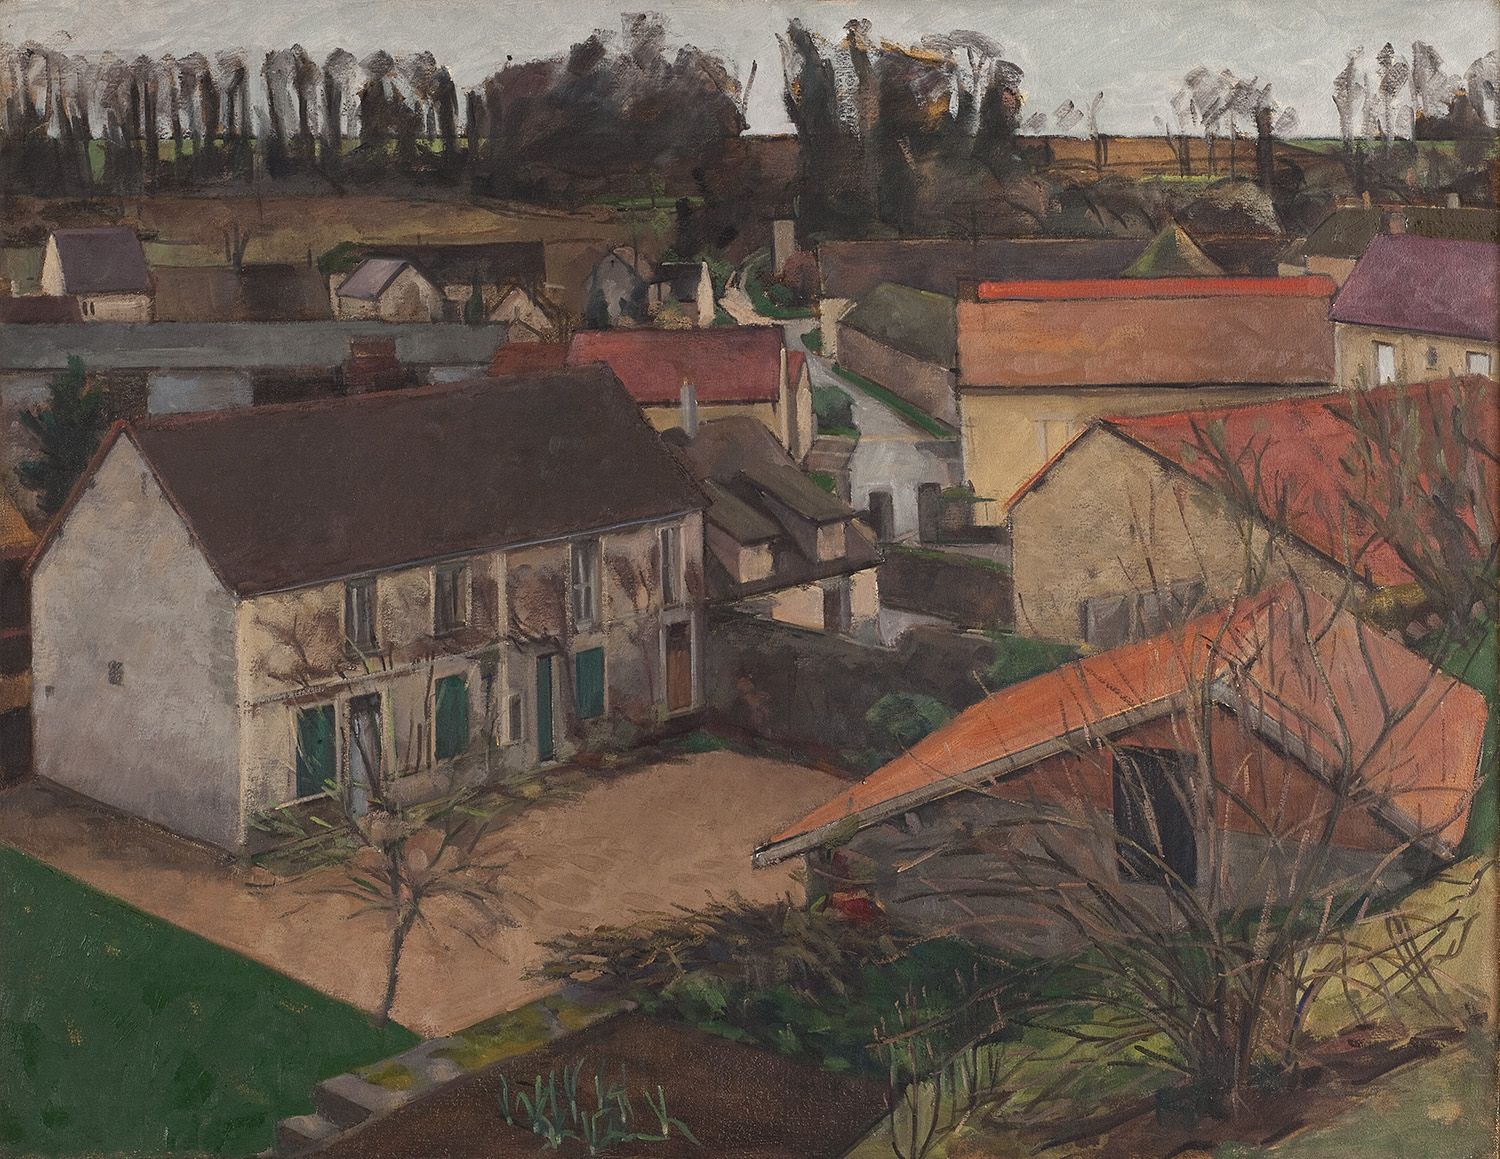 la maison secondaire, Lattainville by Frederick Ortner (larger)